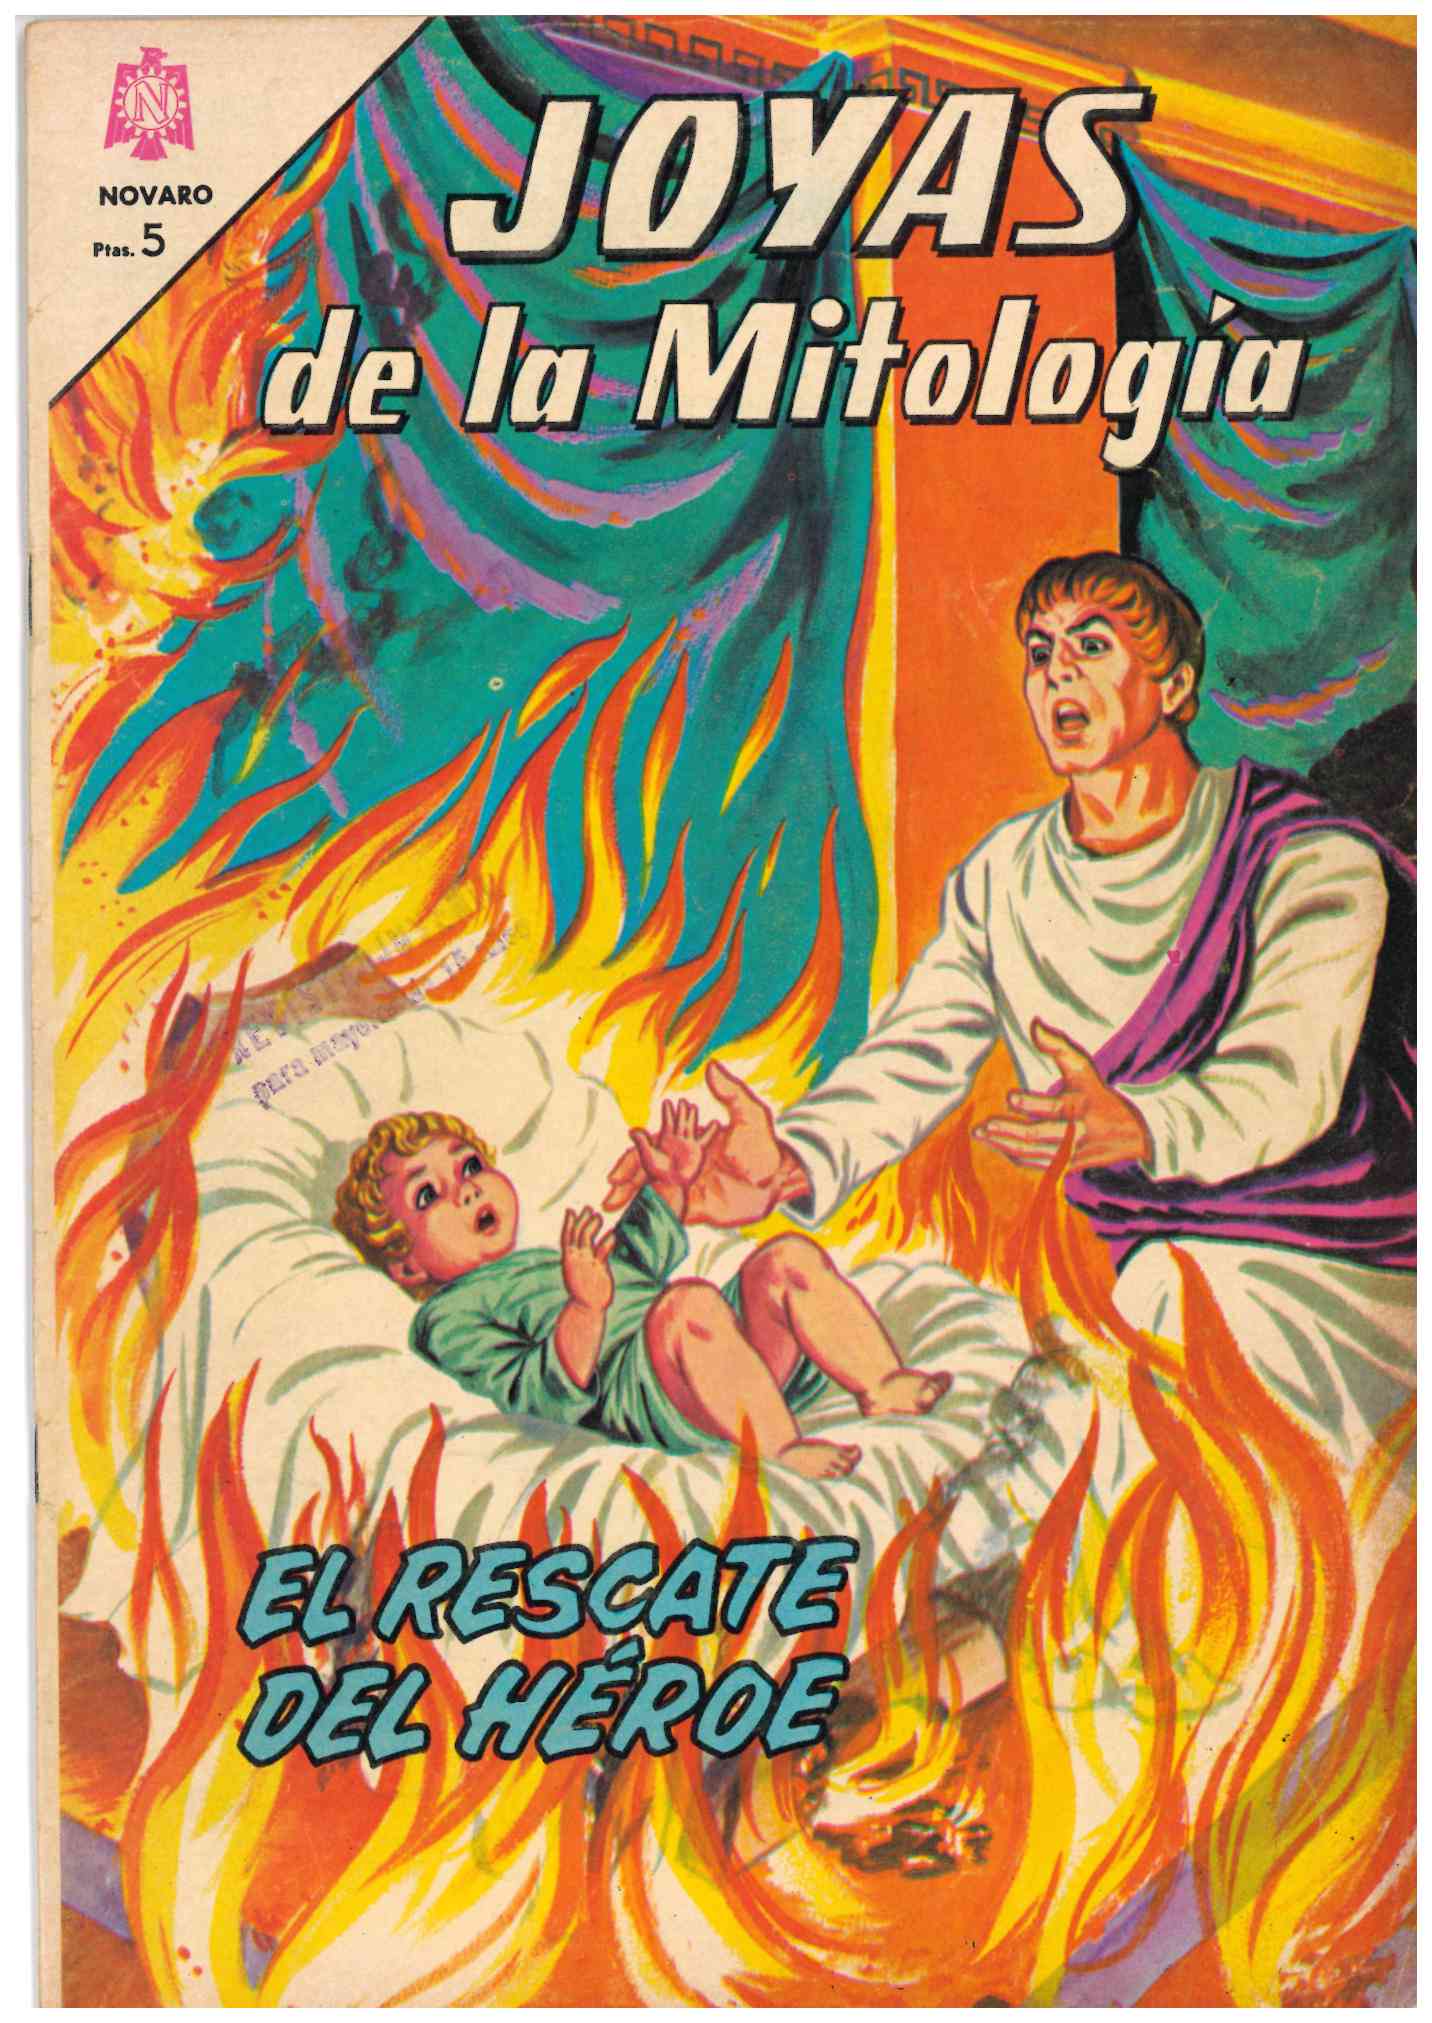 Joyas de la Mitología. Novaro 1964. Nº 19. El rescate del héroe